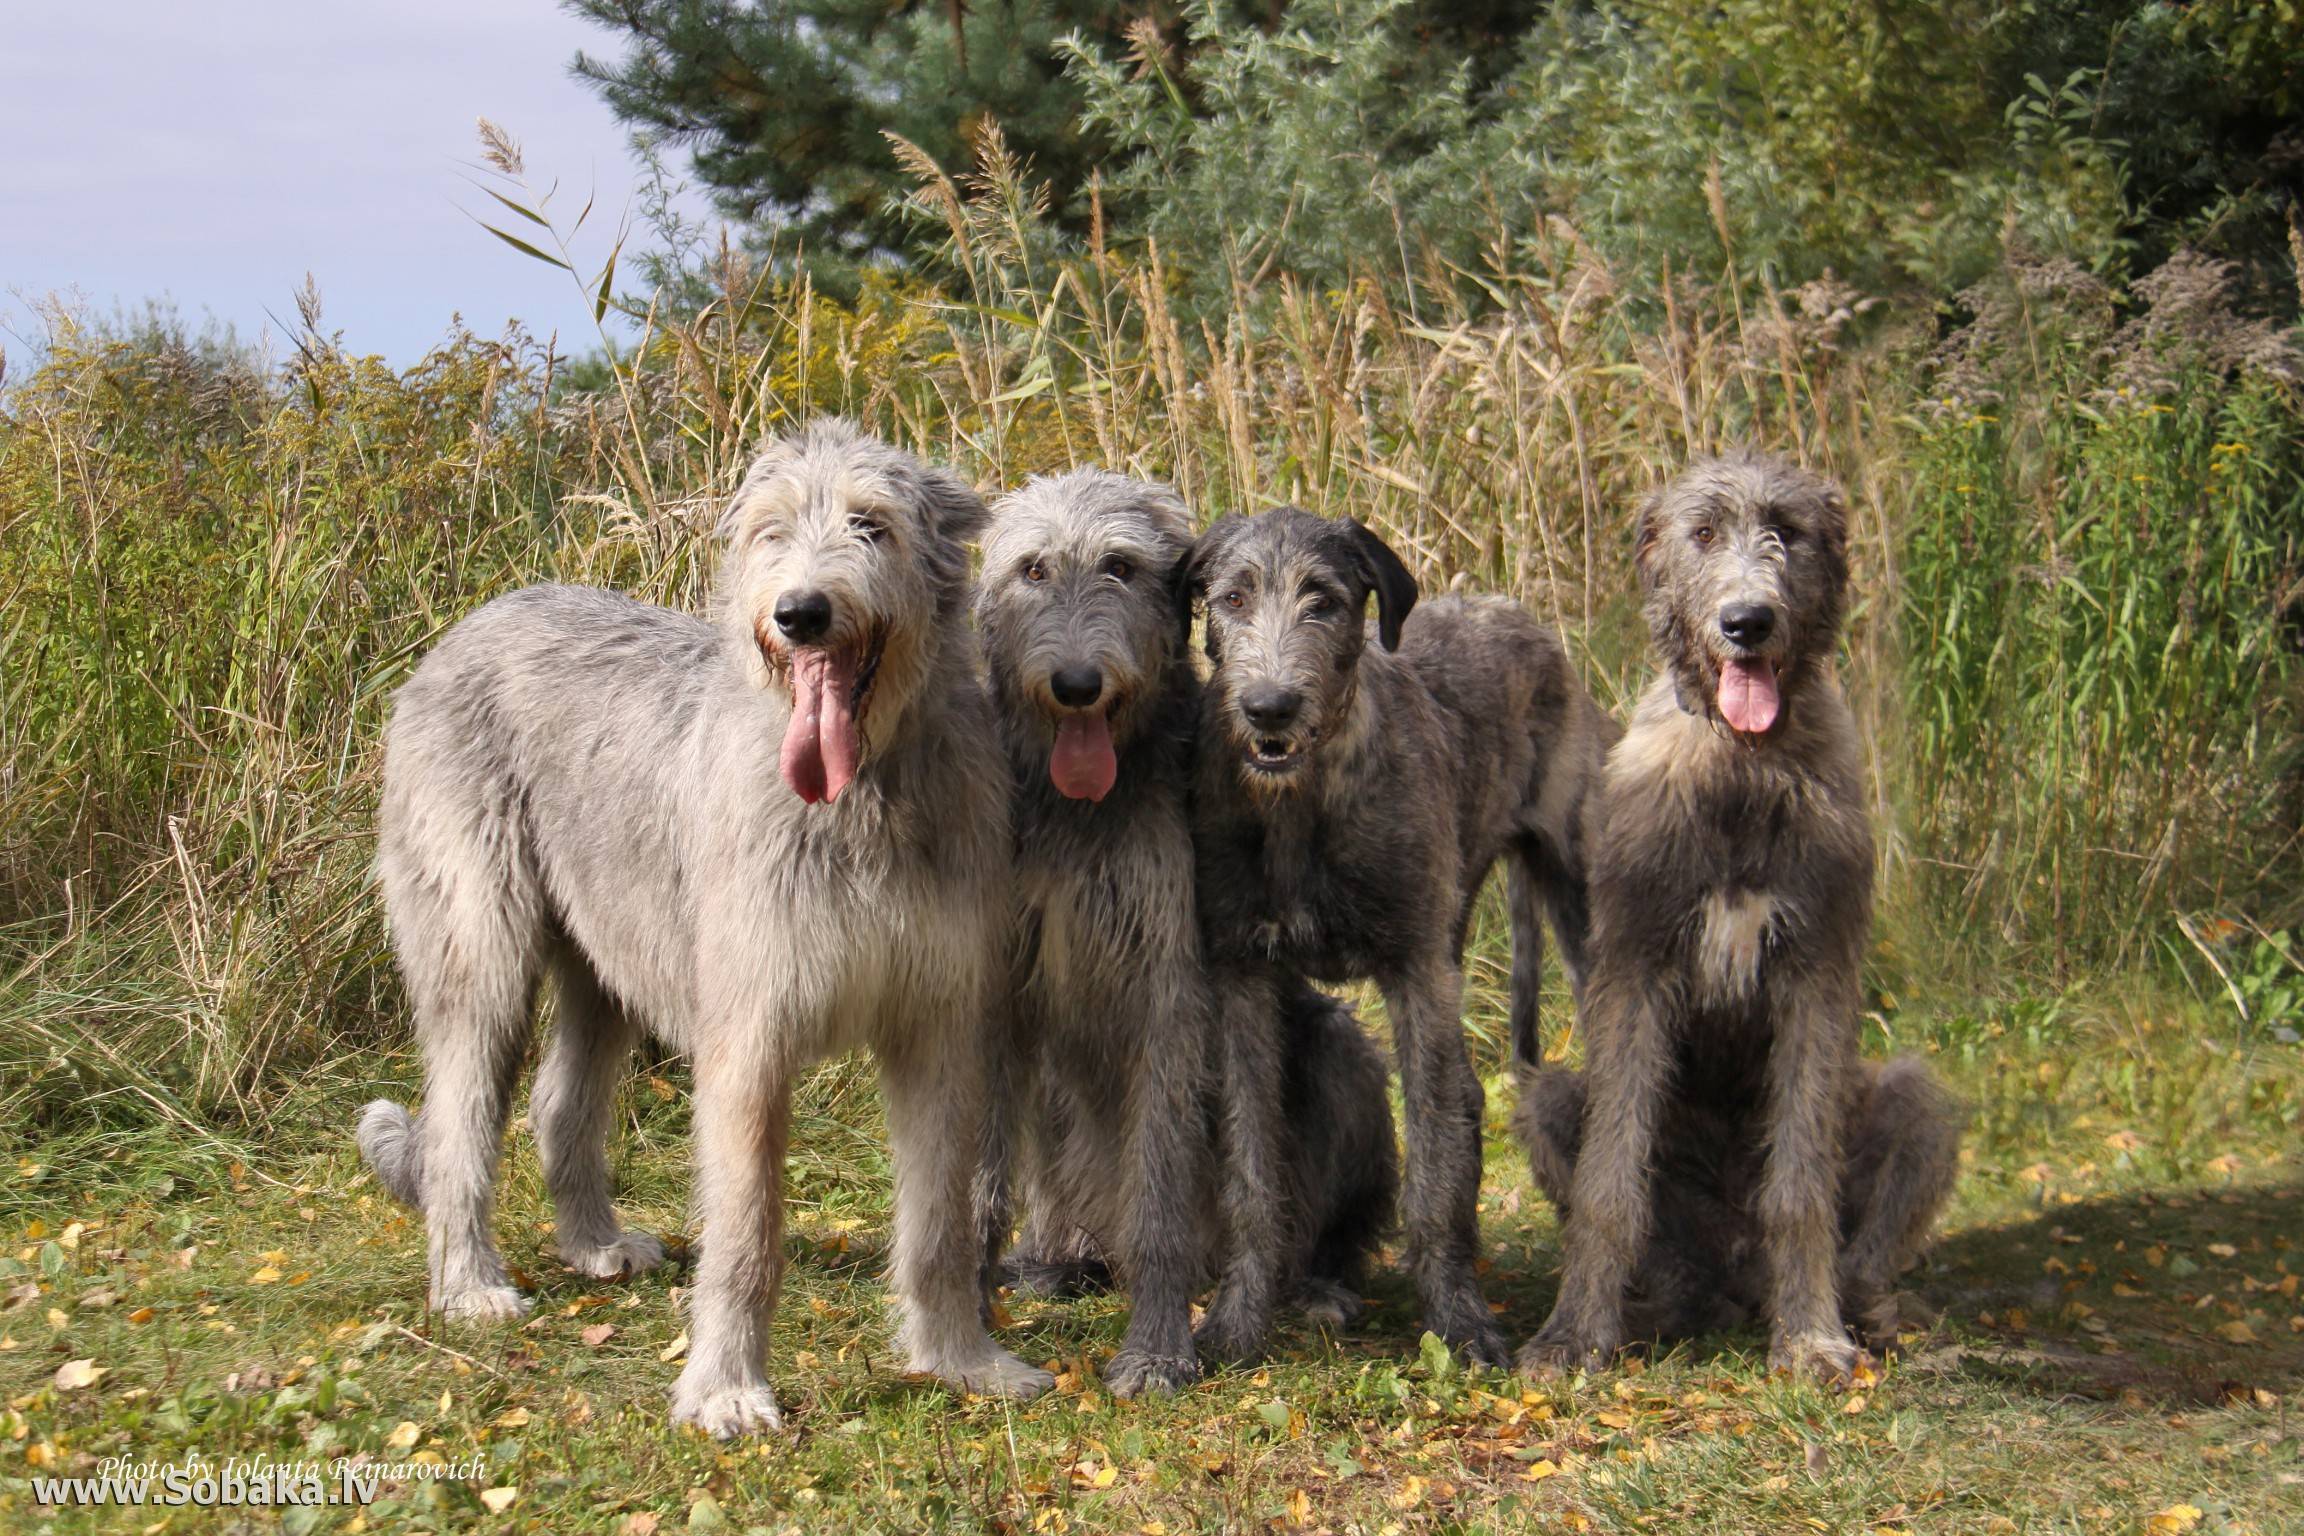 Все о собаках породы ирландский волкодав! wikipet.ru